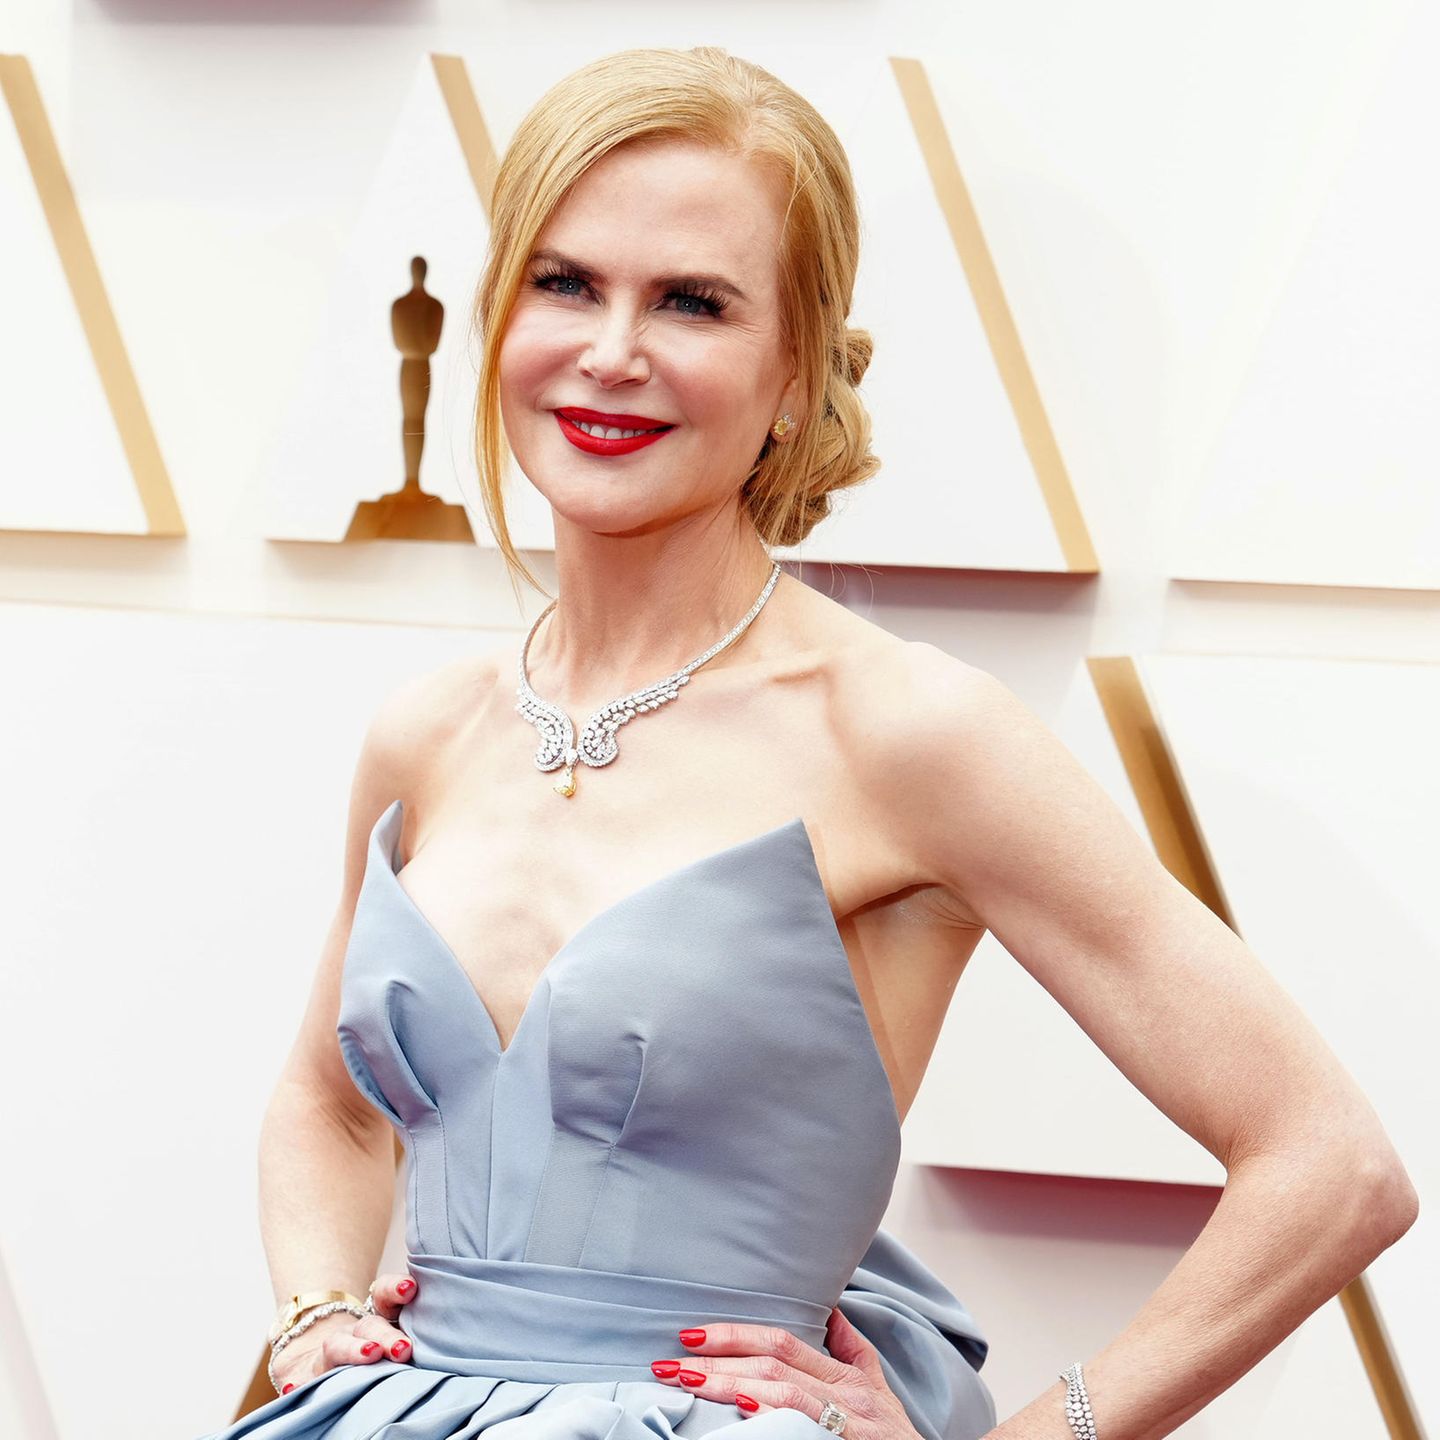 Schauspielerin Nicole Kidman stimmt Nagellack und Lippenstift perfekt aufeinander ab. Das knallige Rot lässt ihren Teint strahlen und bekommt durch die im tiefen Dutt weggesteckten Haare volle Aufmerksamkeit auf dem roten Teppich der 94. Academy Awards. 